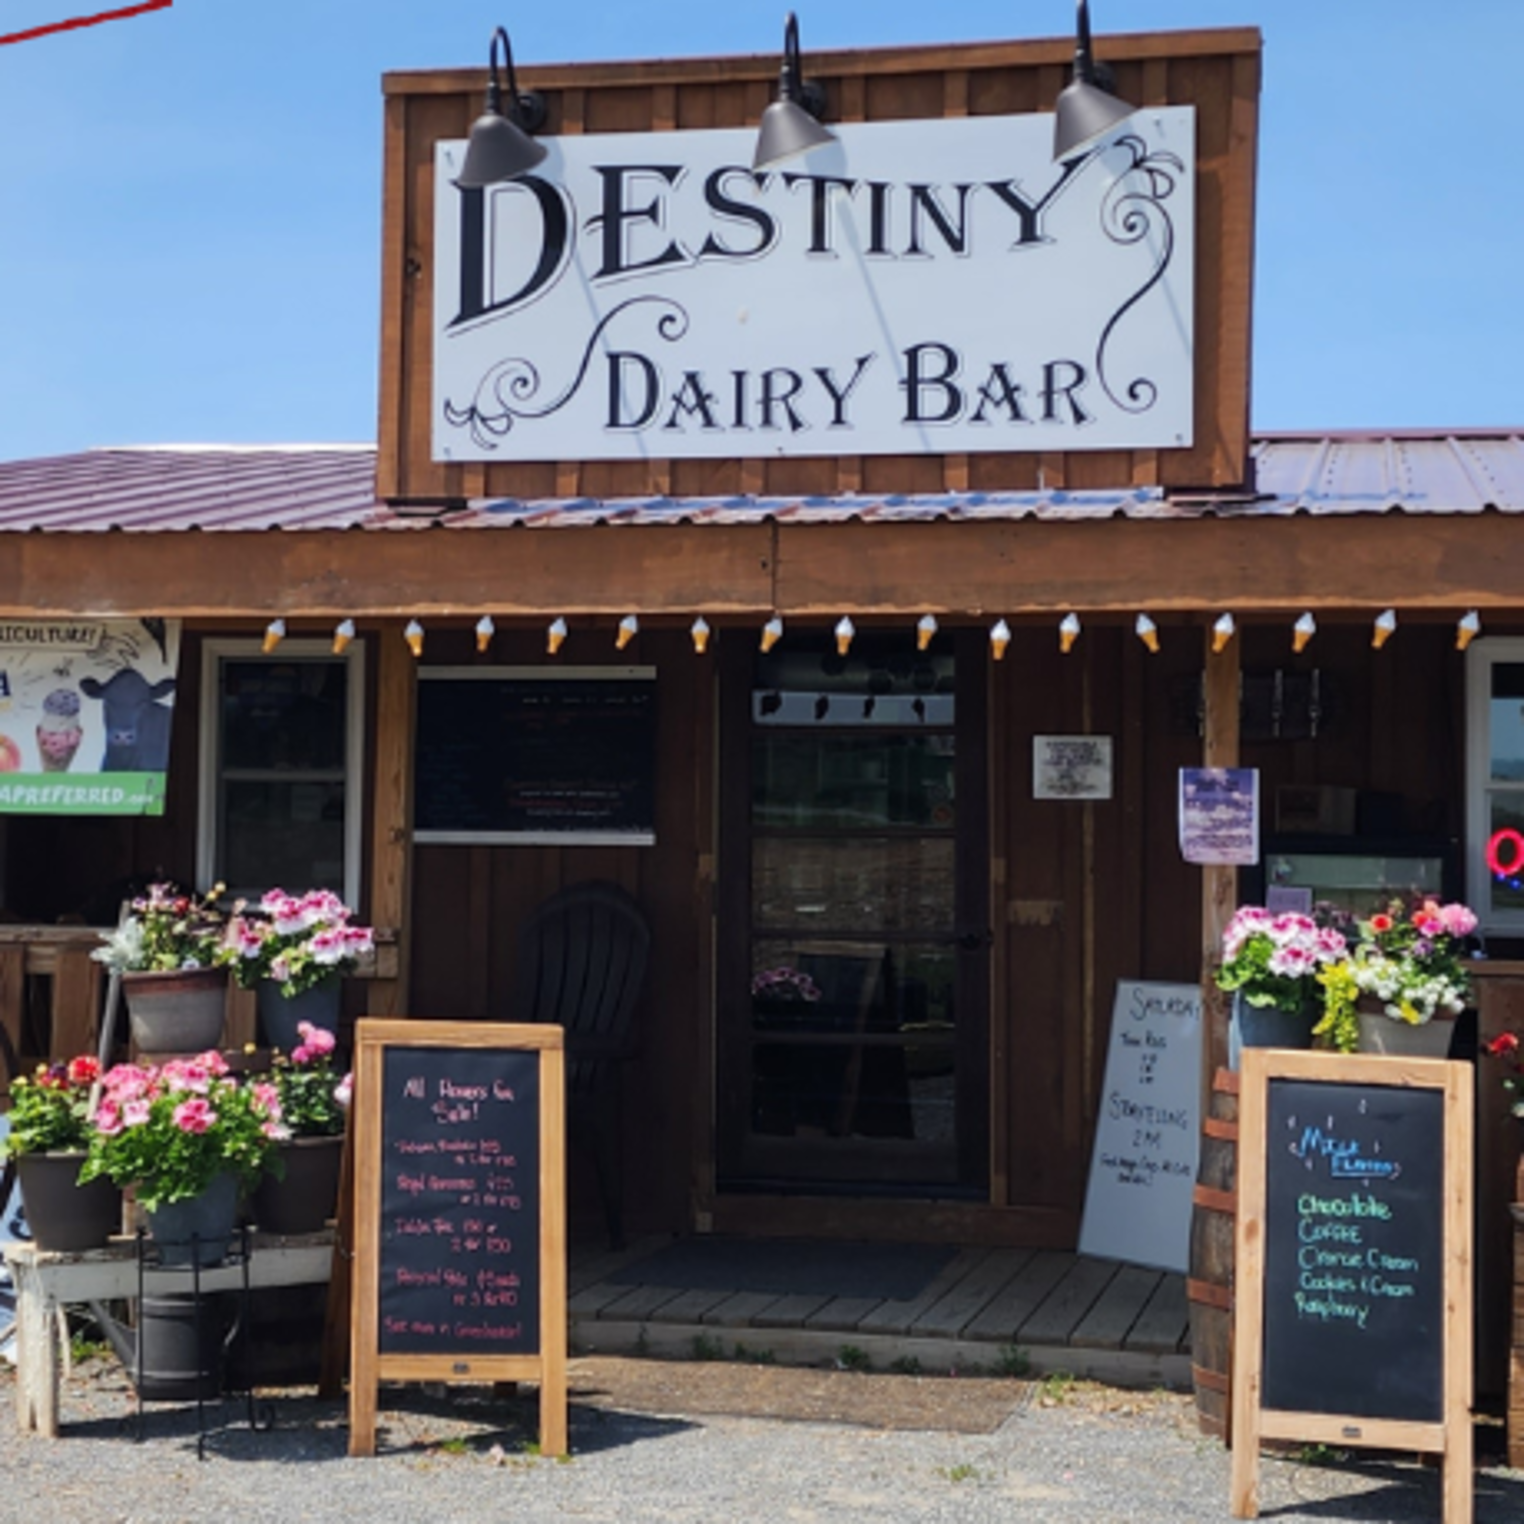 Destiny Dairy Bar